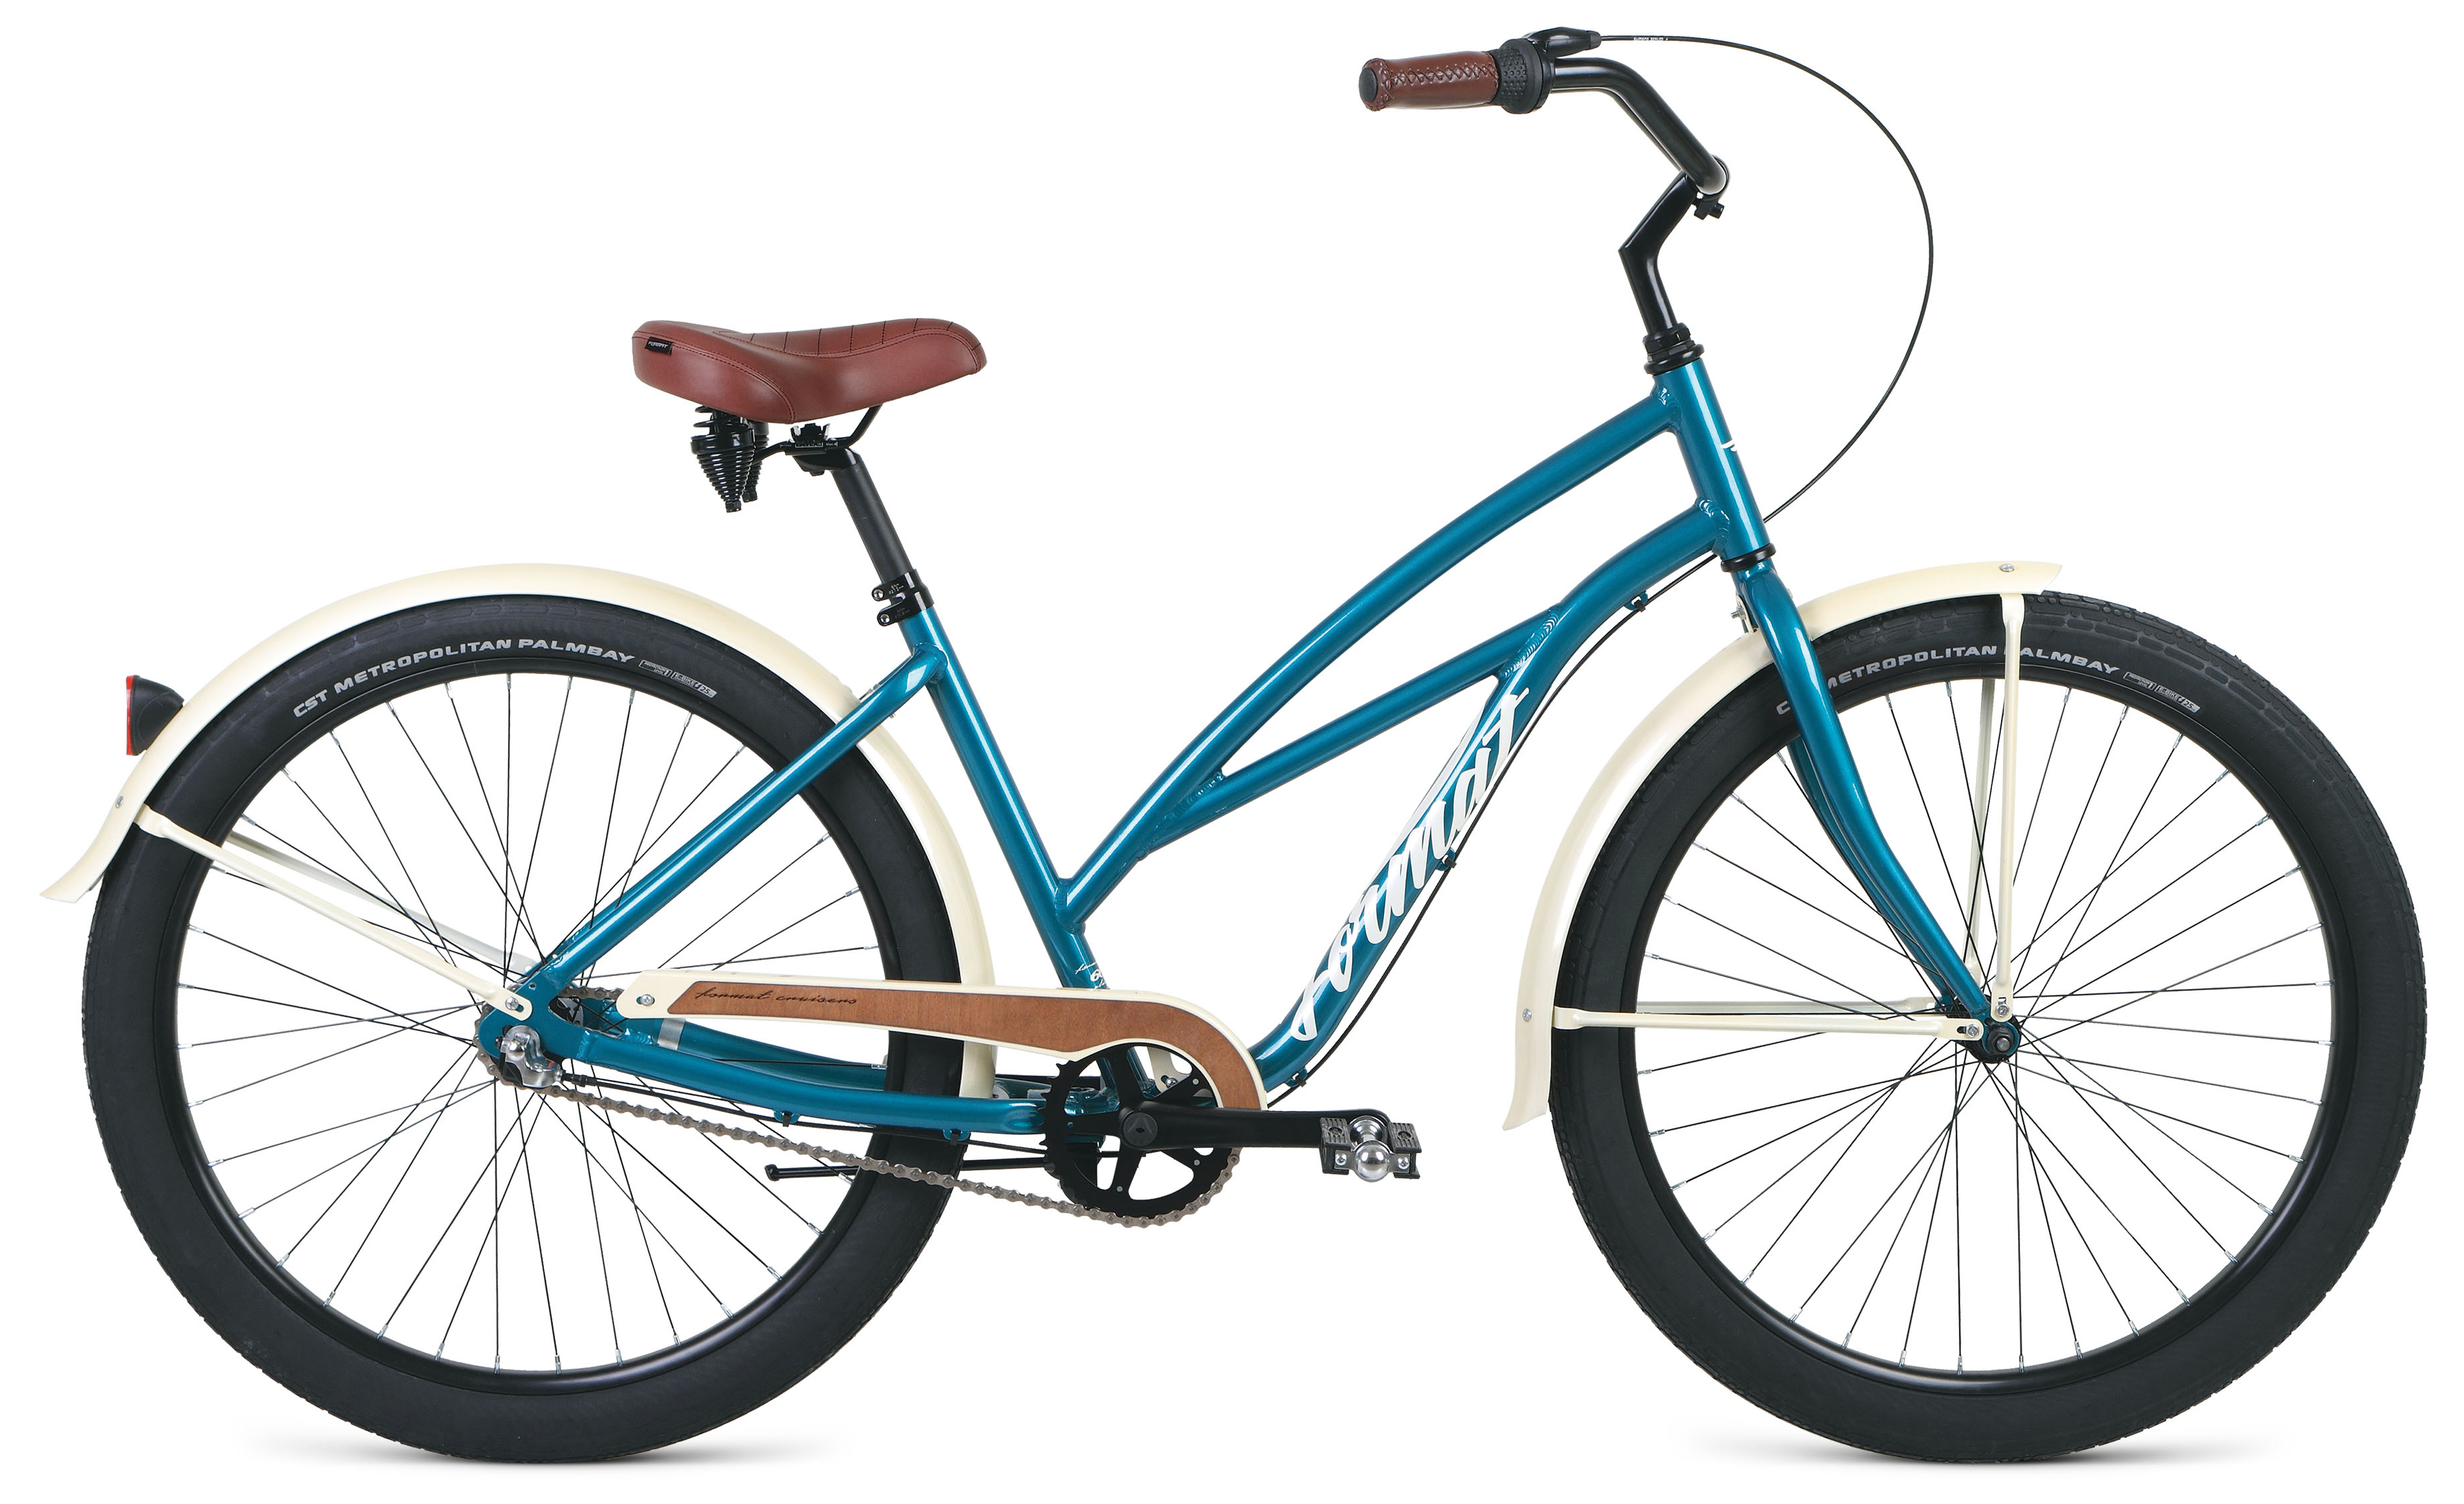  Отзывы о Женском велосипеде Format 5522 2020